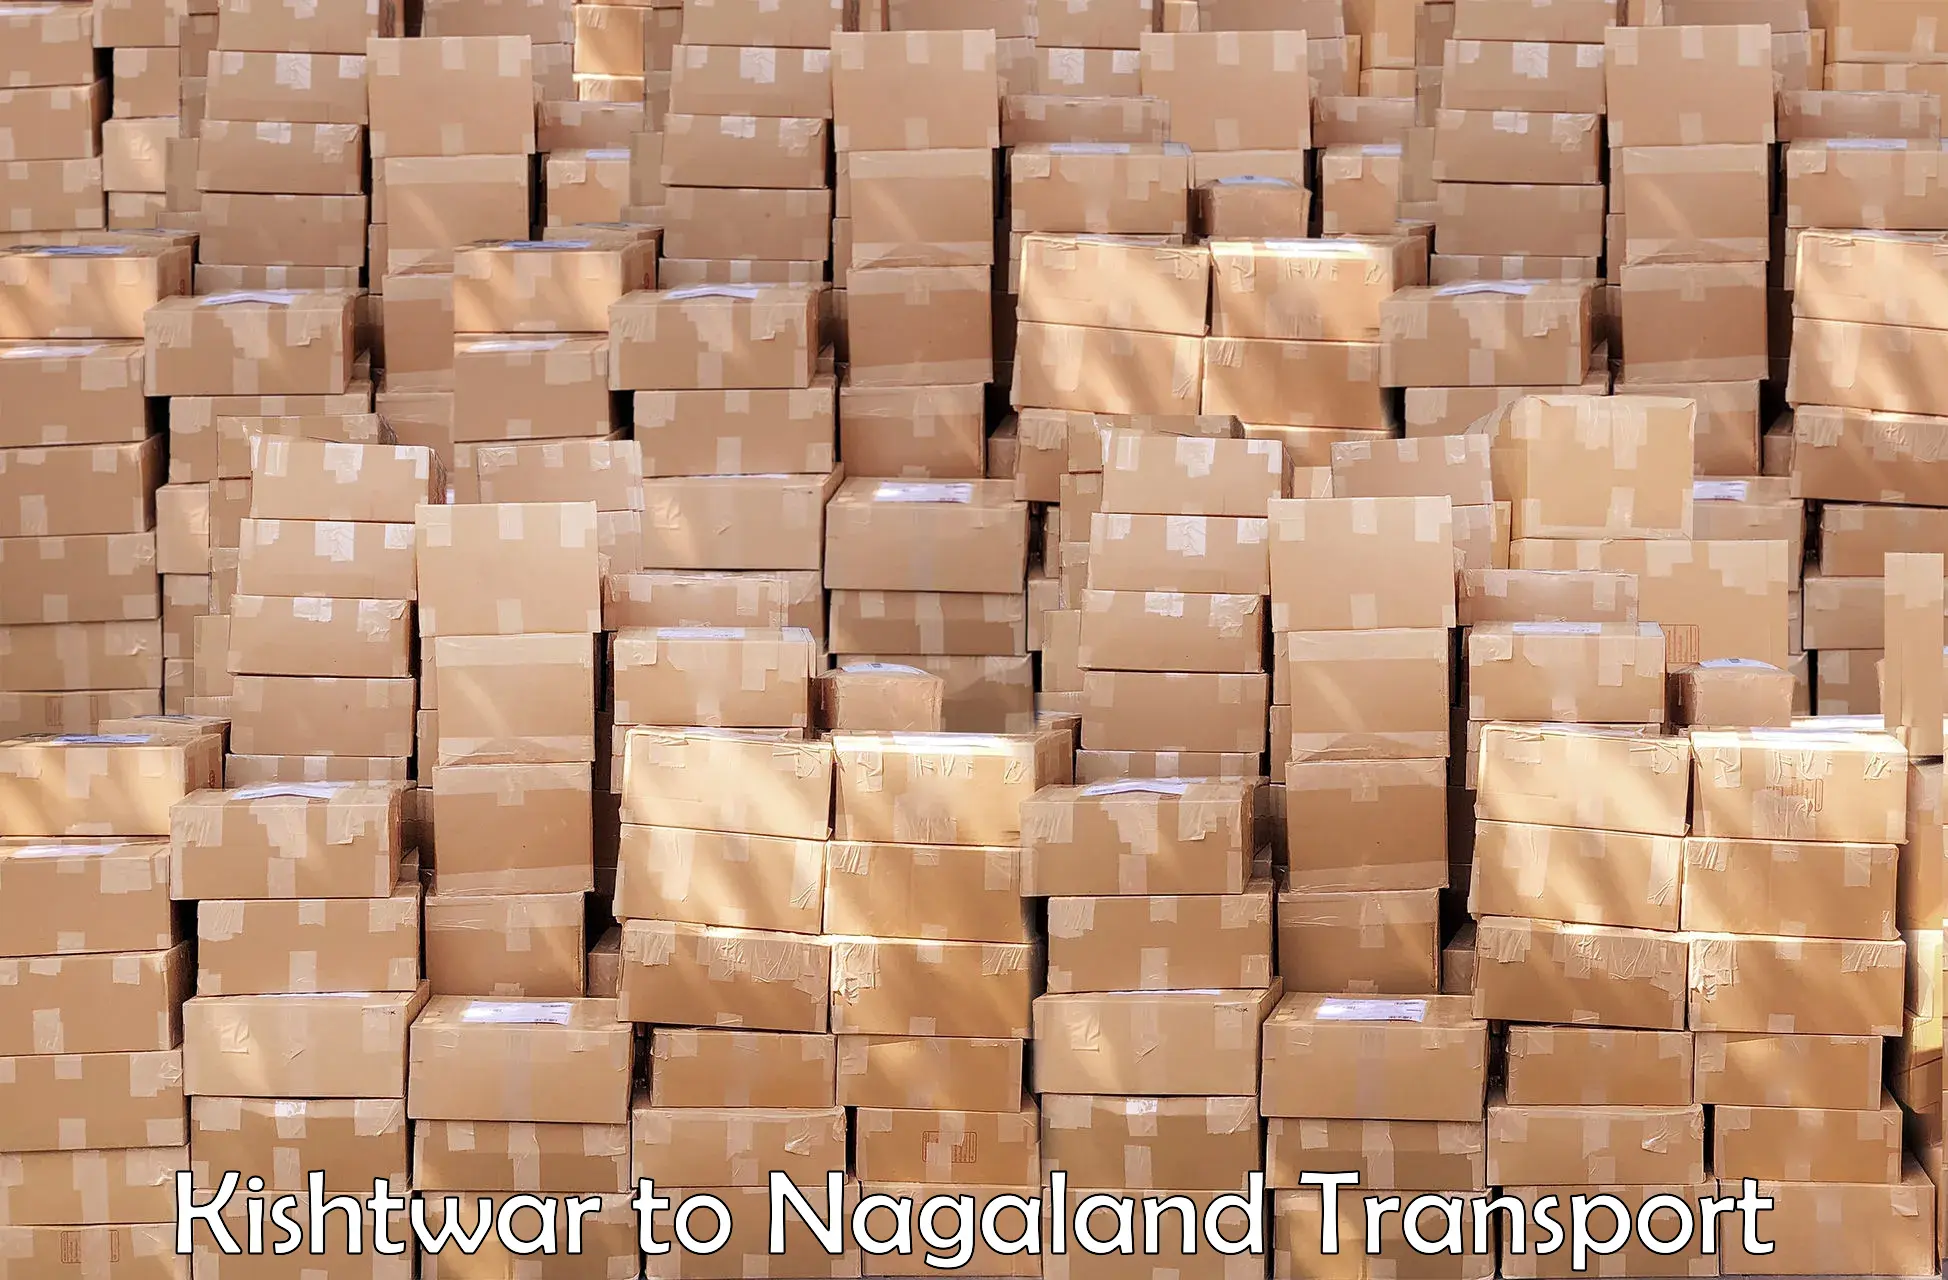 Delivery service Kishtwar to NIT Nagaland